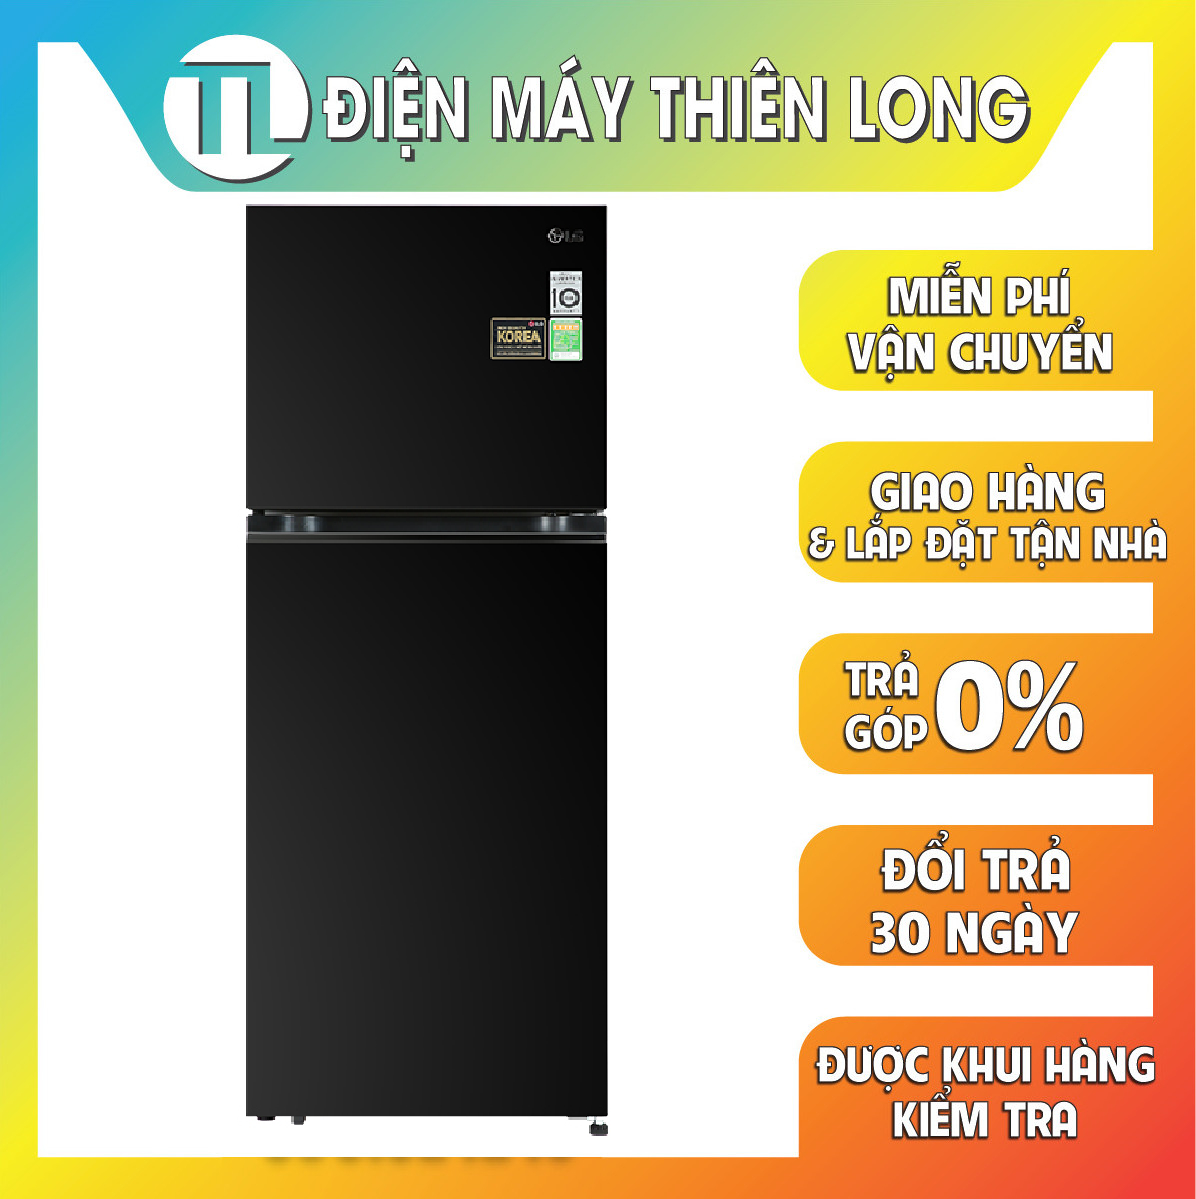 Tủ lạnh LG Inverter 314 Lít GN-D312BL - Hàng chính hãng - Chỉ giao TPHCM, Bình Dương